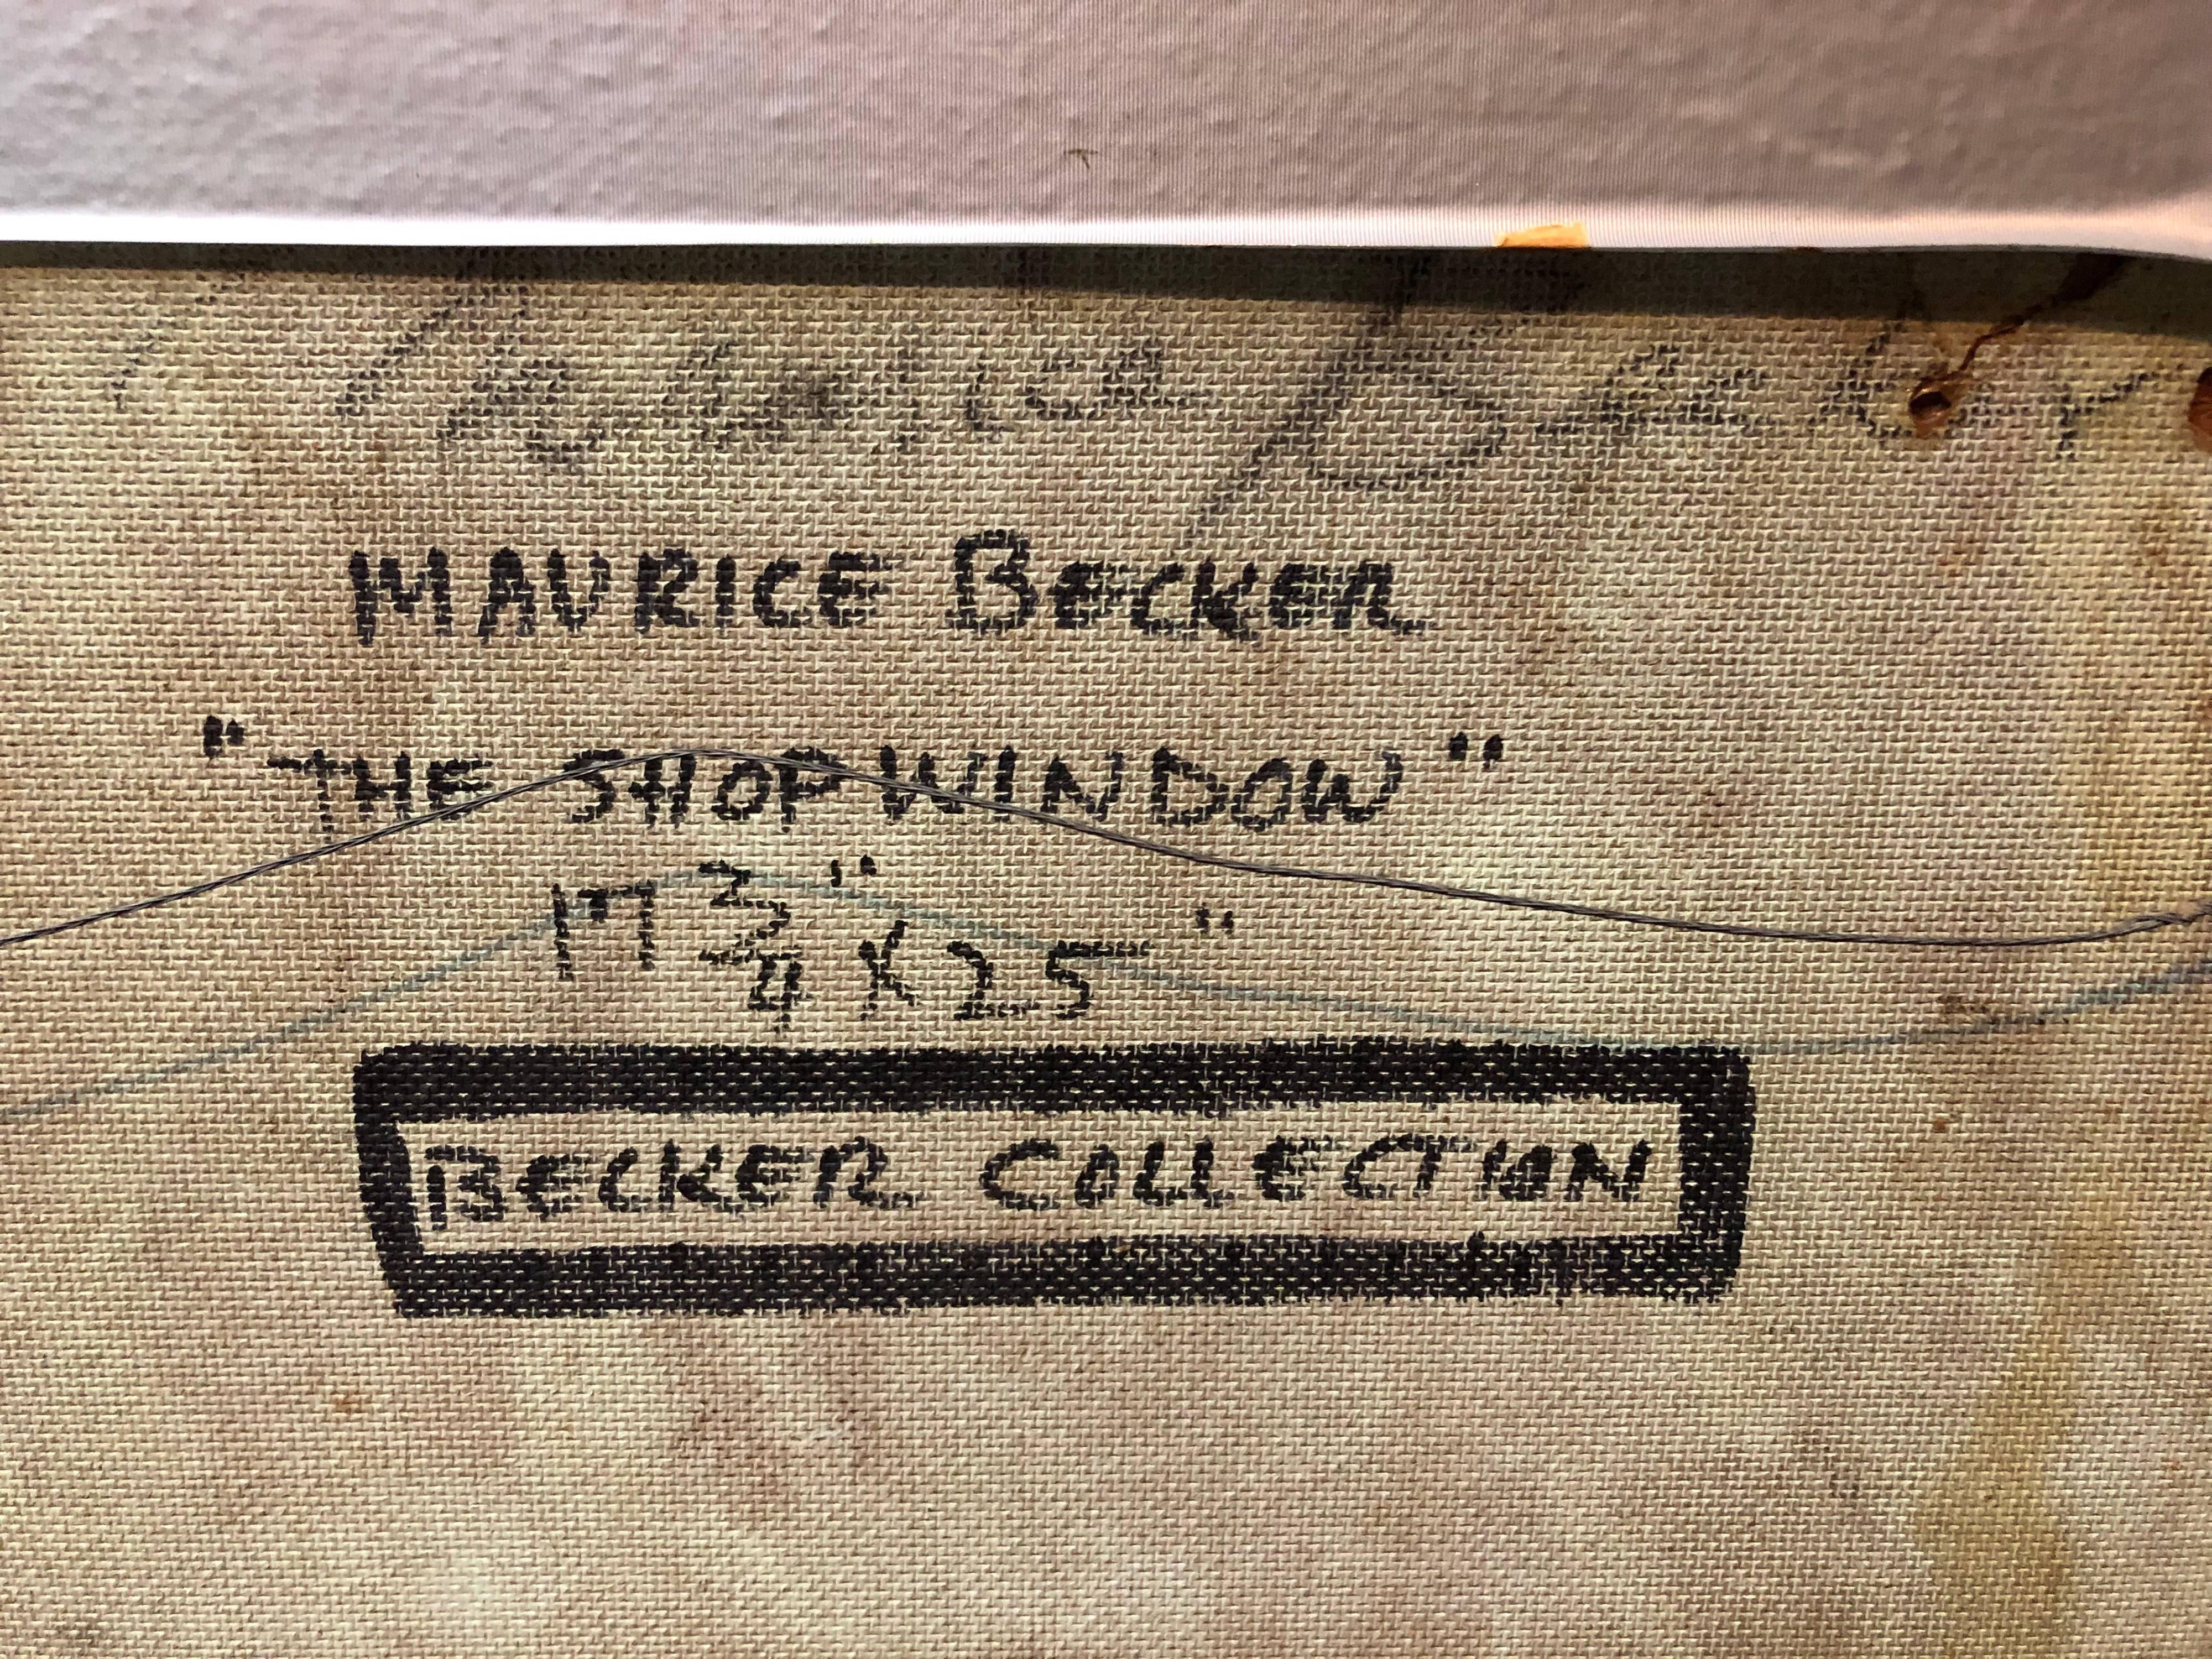 la vitrine du magasin New York City, années 1940 
17.75X25 taille de la vue.

 Maurice Becker (1889-1975) était un artiste politique radical surtout connu pour son travail dans les années 1910 et 1920 pour des publications telles que The Masses et